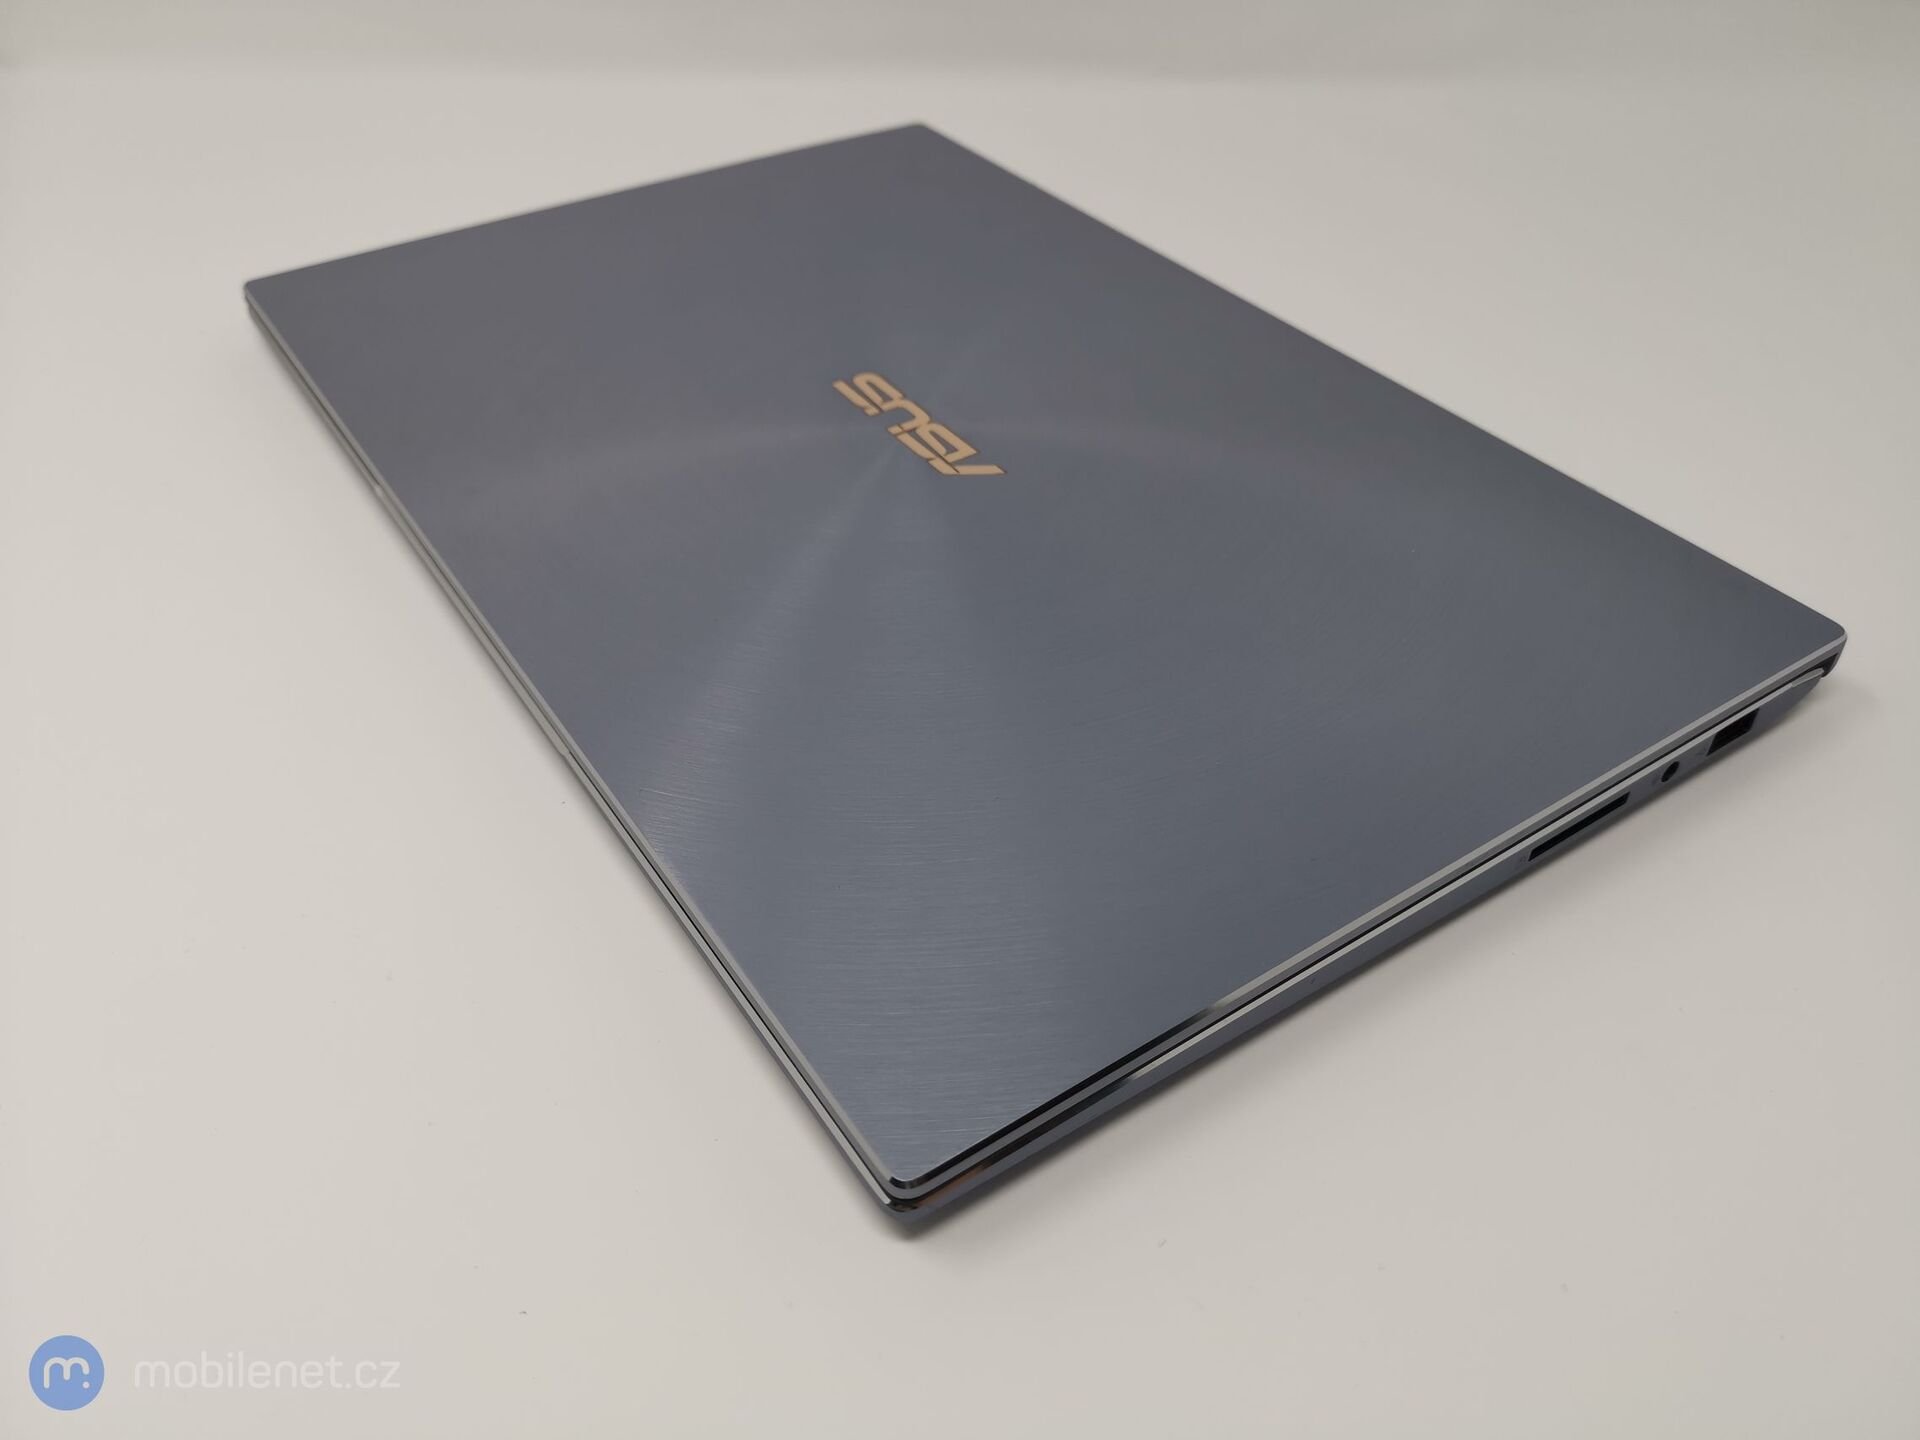 ASUS Zenbook 14 (UX431)